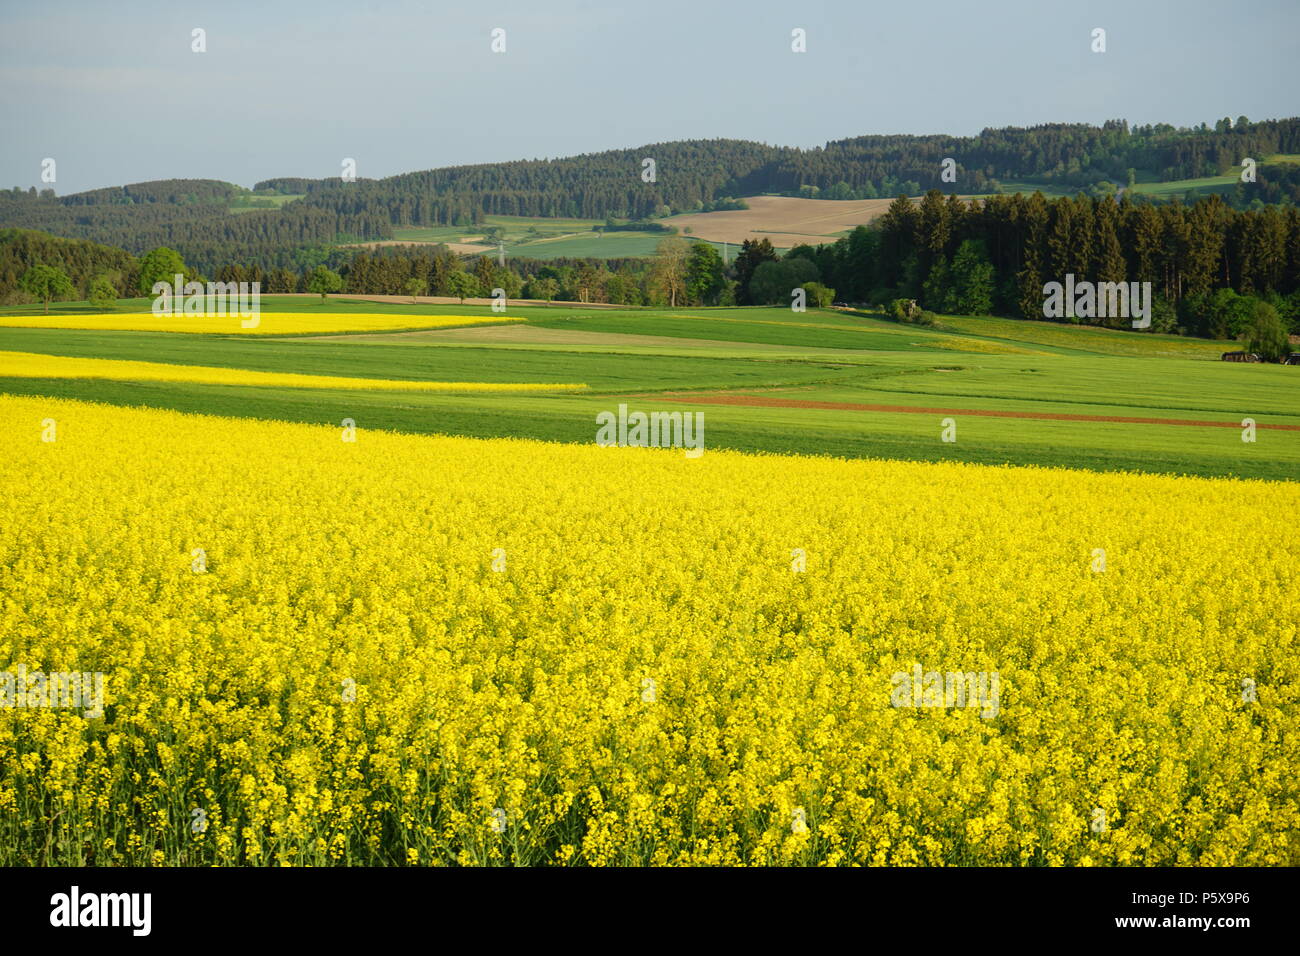 Landschaft bei Bachheim, bluehendes Rapsfeld, Landkreis Breisgau-Hochschwarzwald, Baar, Hochebene der Baar, Baden-Württemberg, Deutschland, Europa Stock Photo